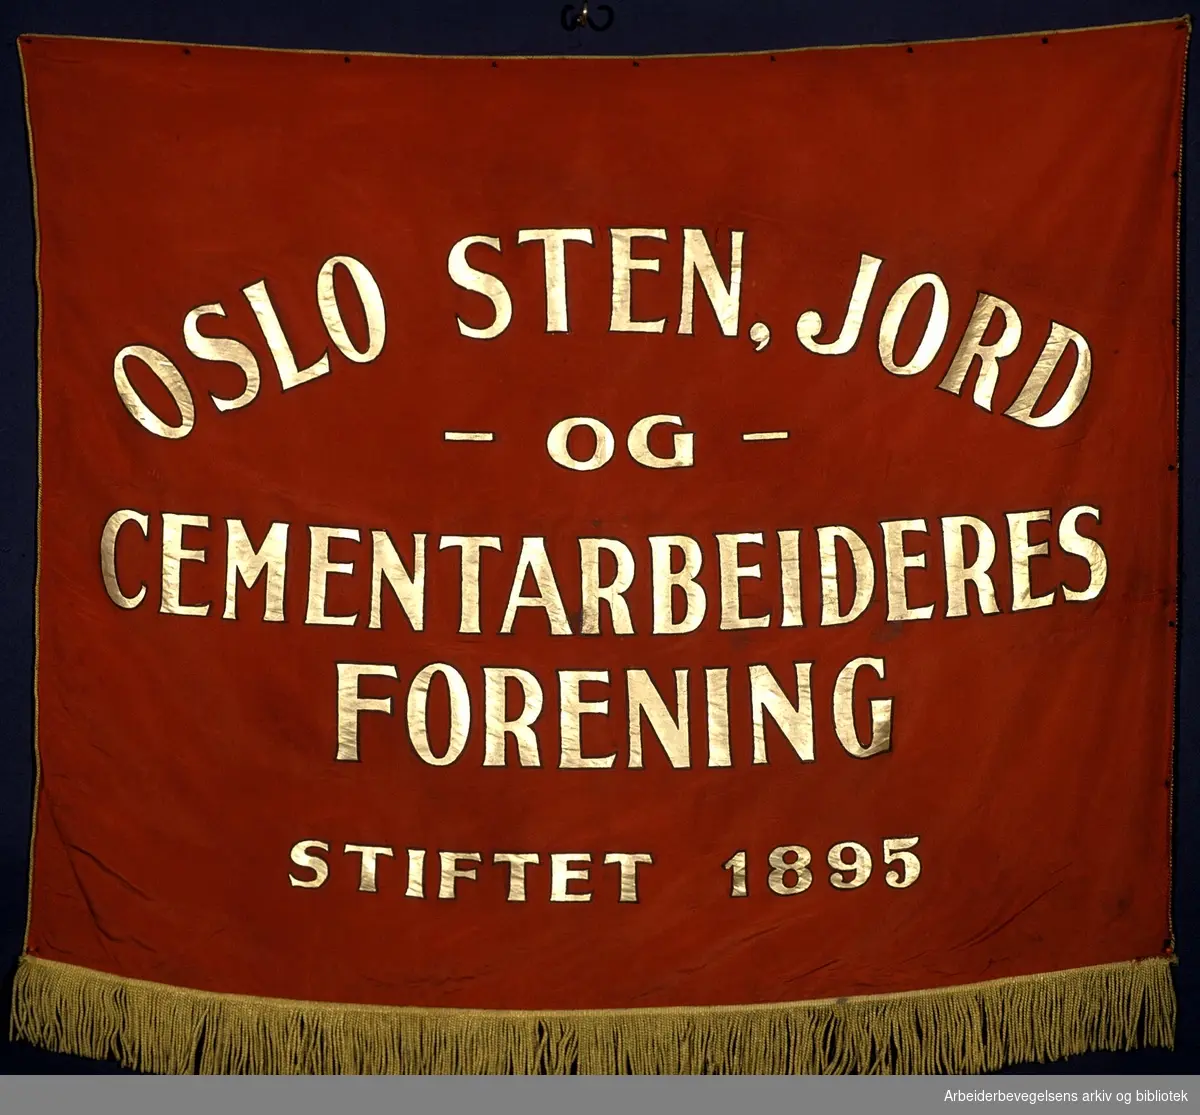 Oslo sten- jord- og cementarbeideres forening.Stiftet 15. februar 1895..Forside..Fanetekst: Oslo Sten, Jord og cementarbeideres forening..Stiftet 1895..Baksiden er lik